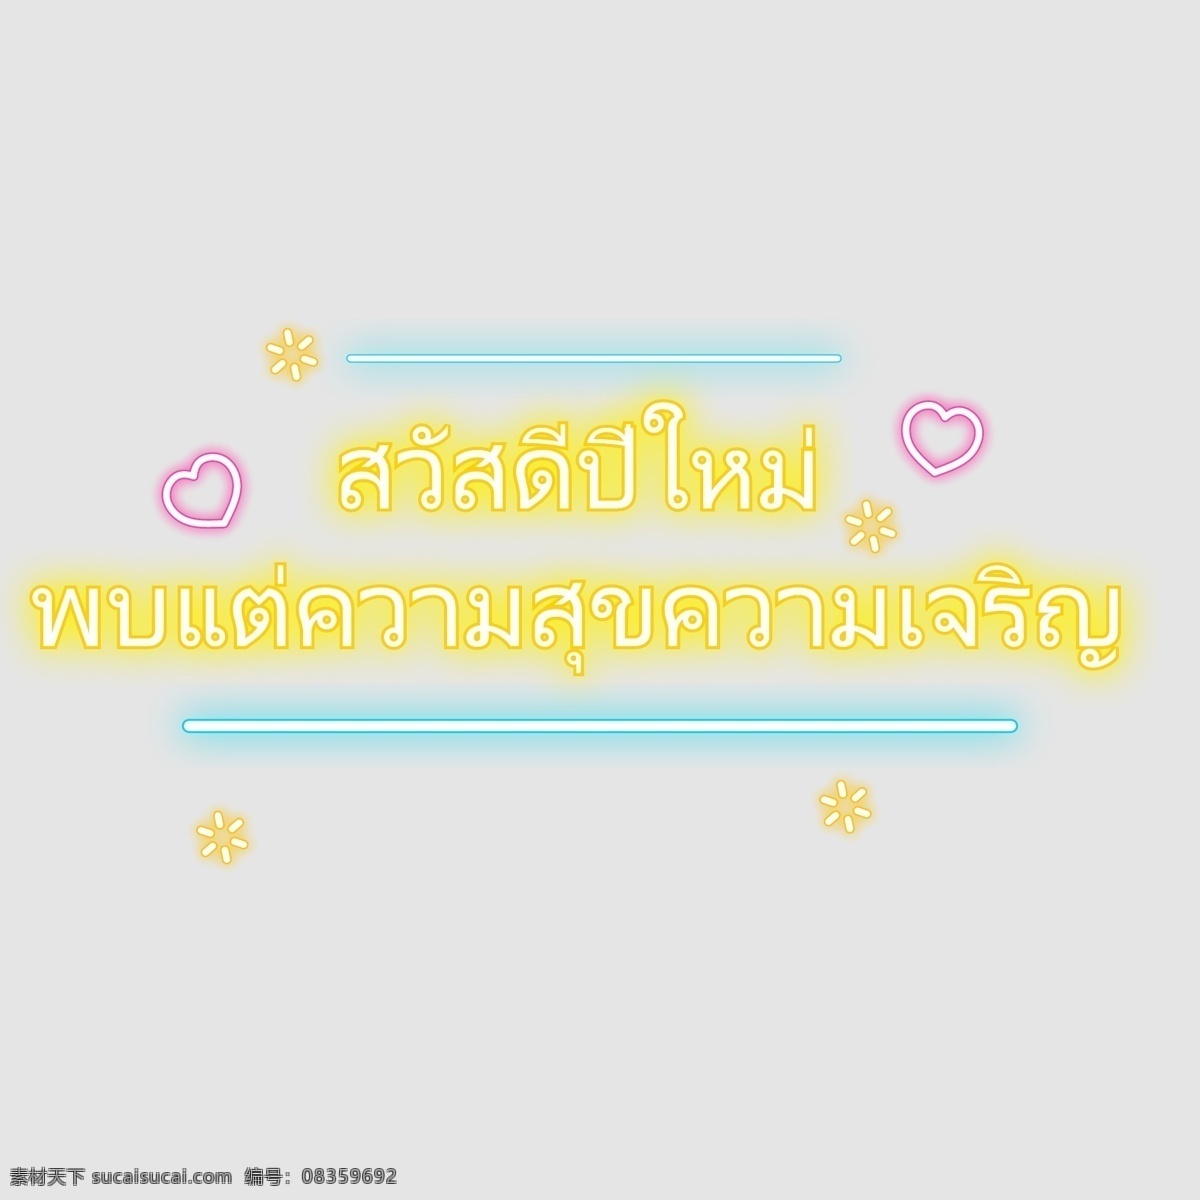 泰国 文字 字体 发现 黄色 粉红色 心 幸福 粉红 黄